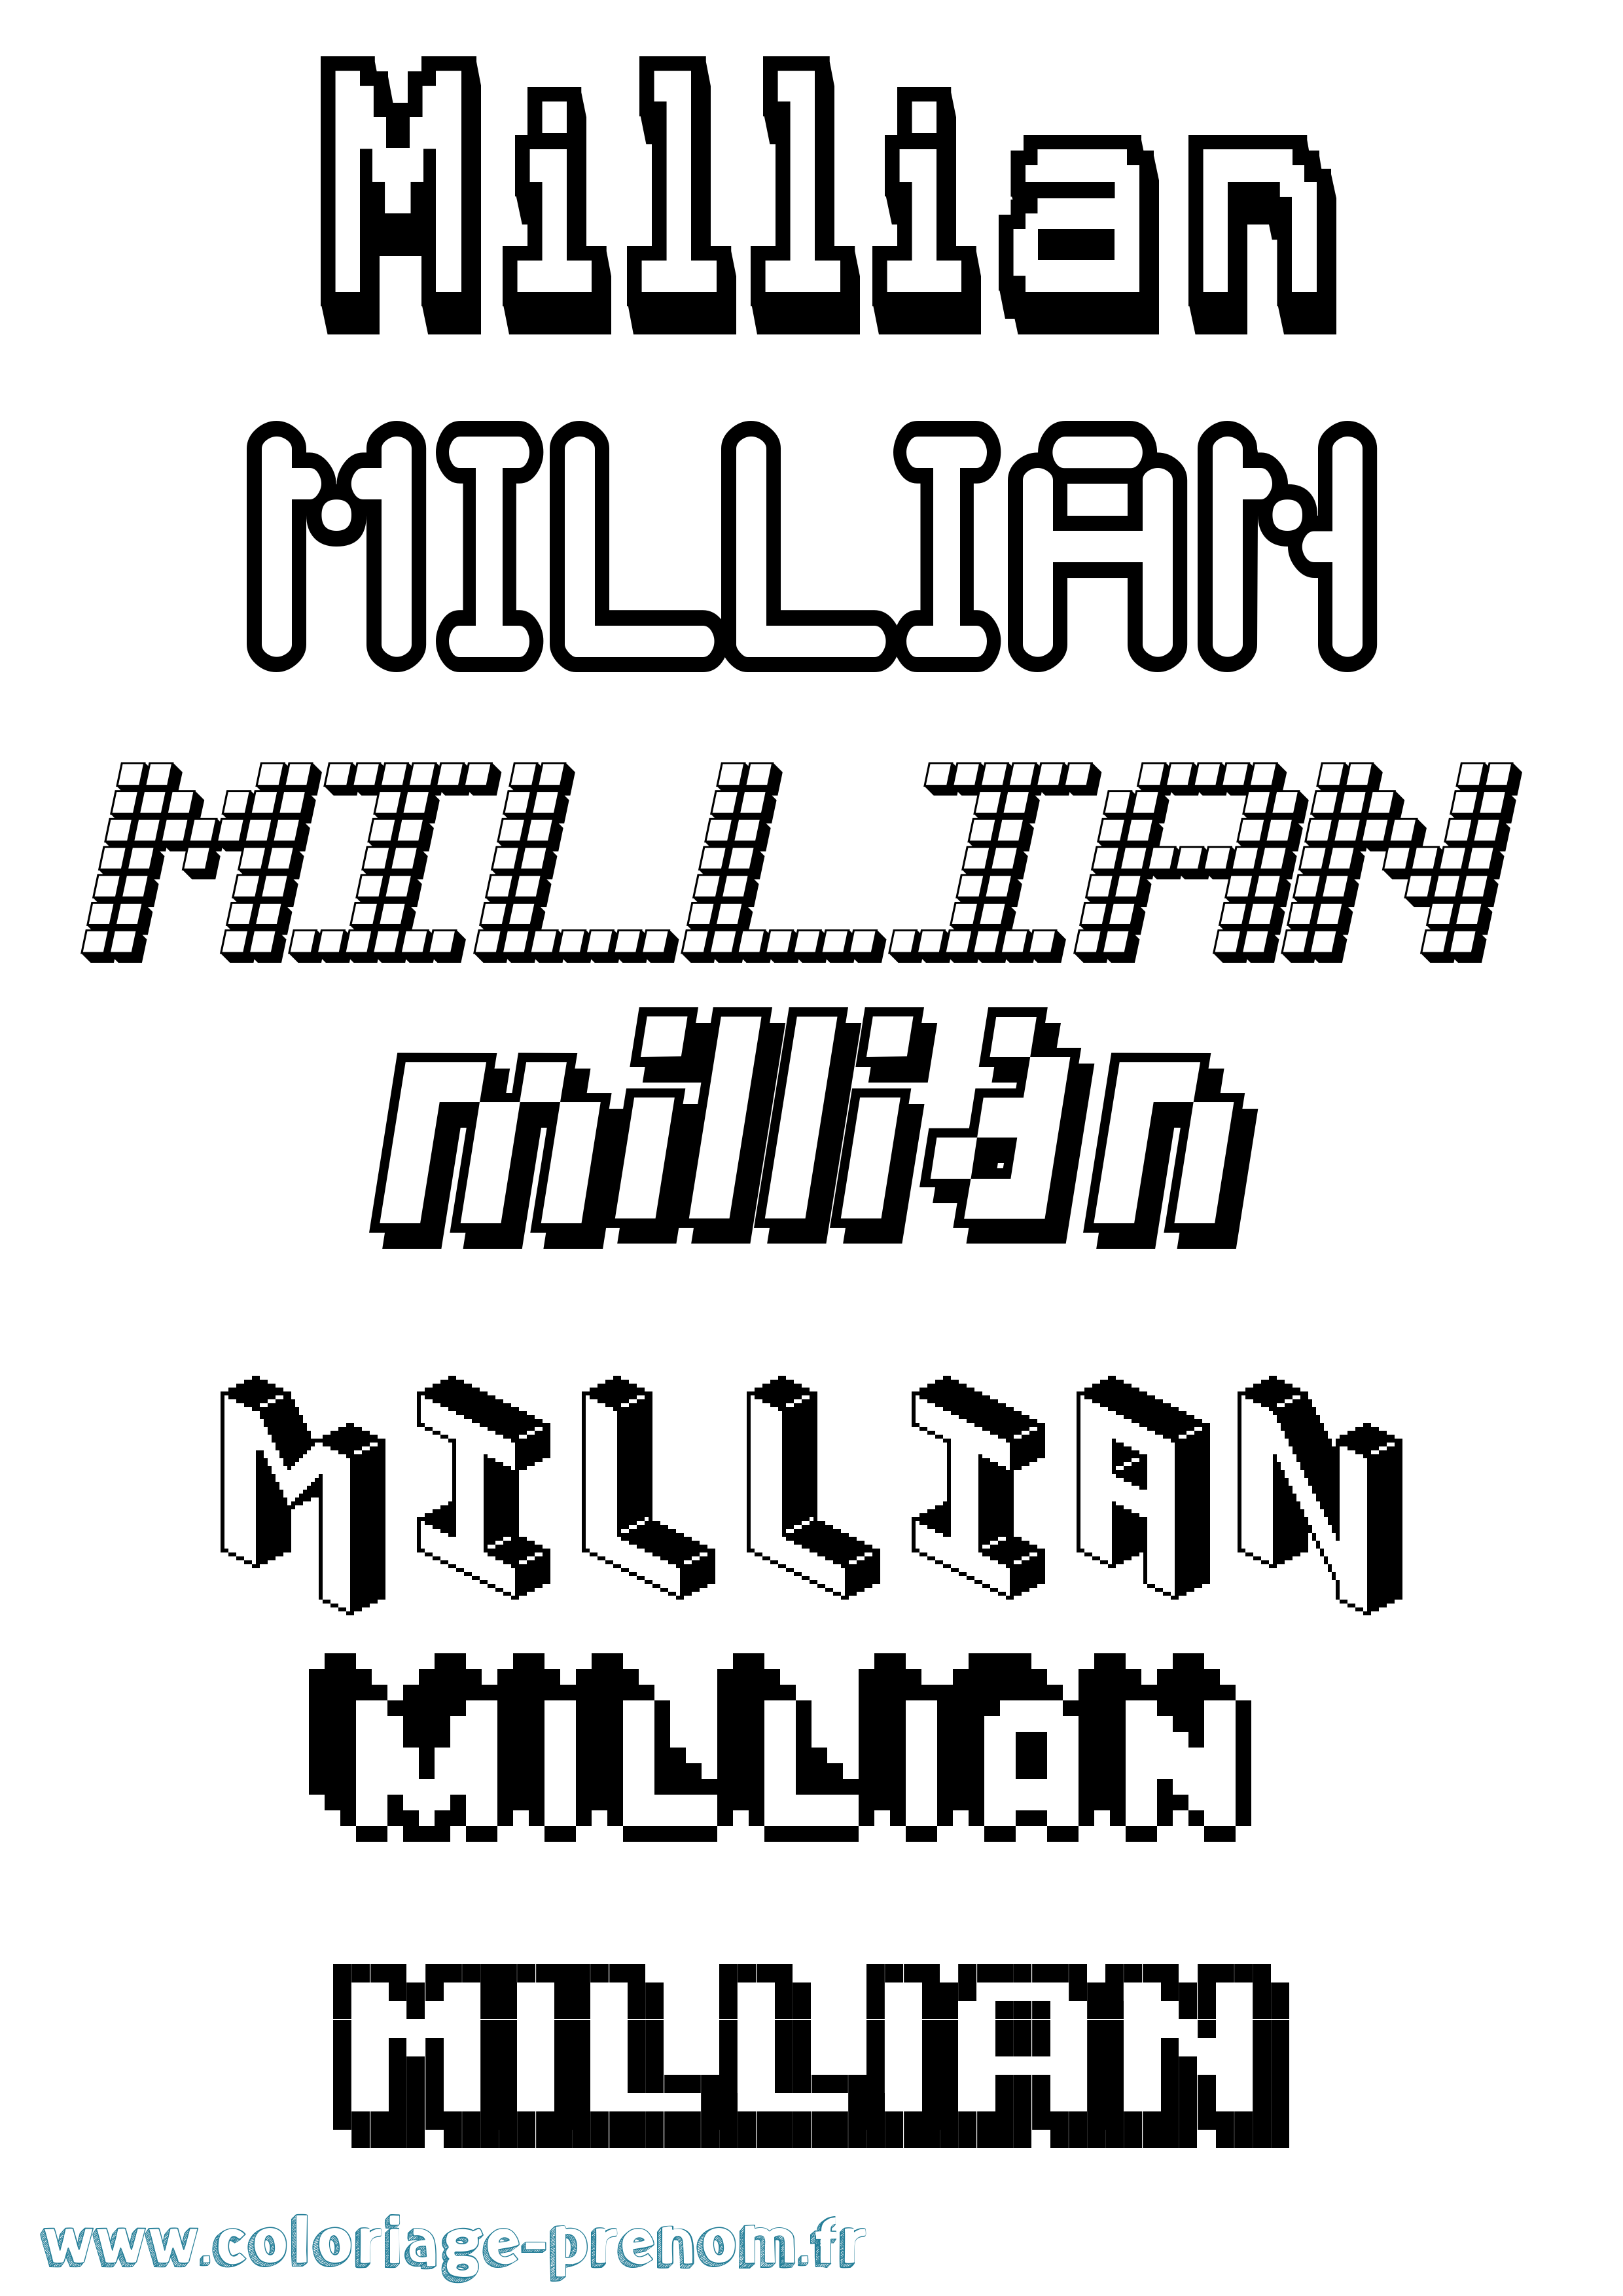 Coloriage prénom Millian Pixel